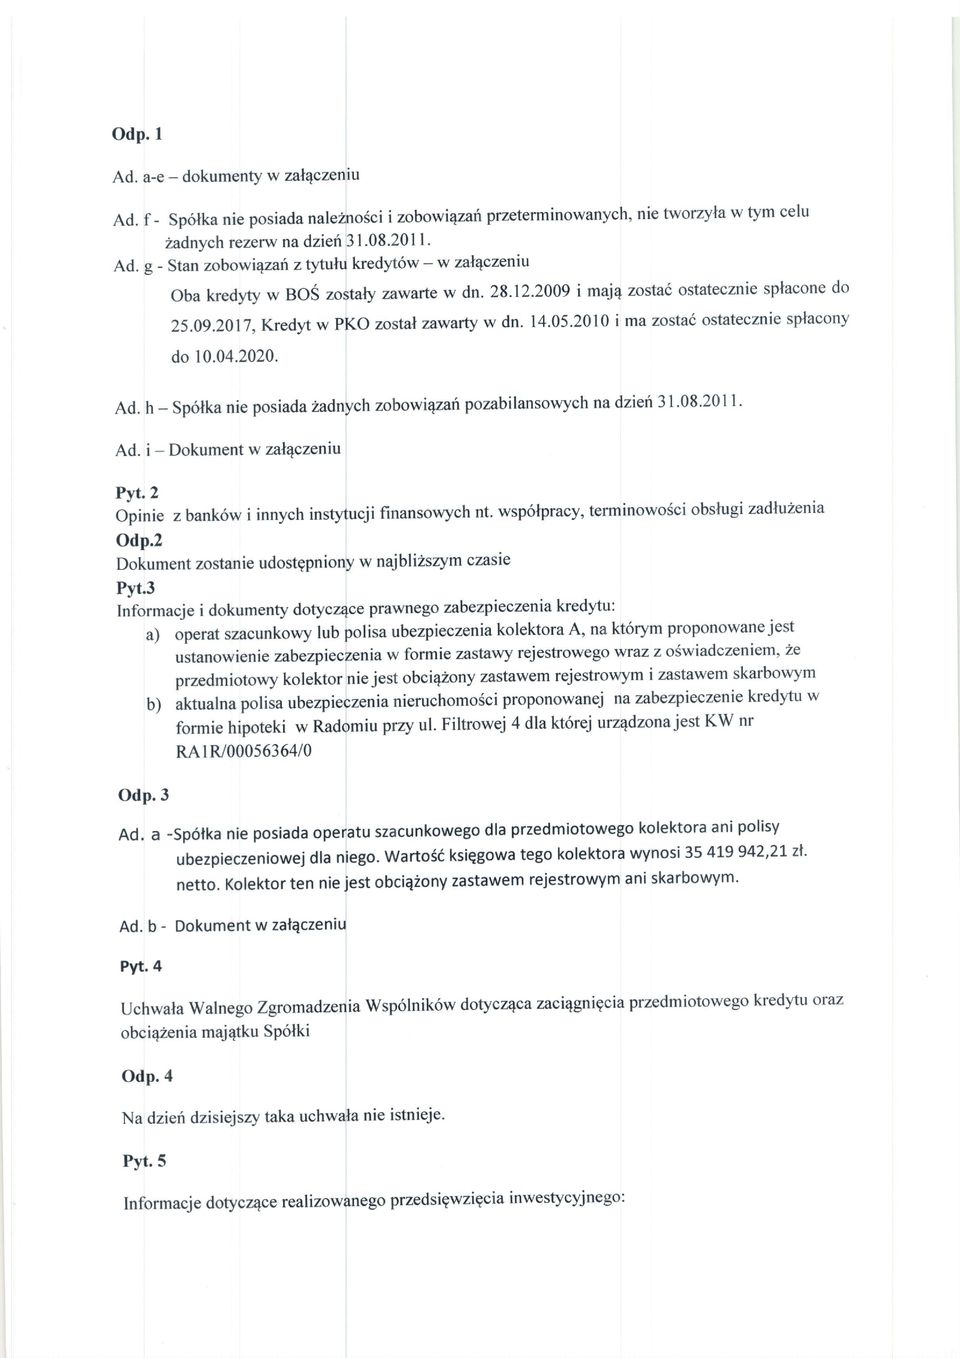 h - Spolka nie posiadazadnych zobowiryafi pozabilansowych nadzien 31.08-2011. Ad. i - Dokument w zalqczeniu Pyt.2 Opinie z bank6w i innych instytucji finansowych nt.